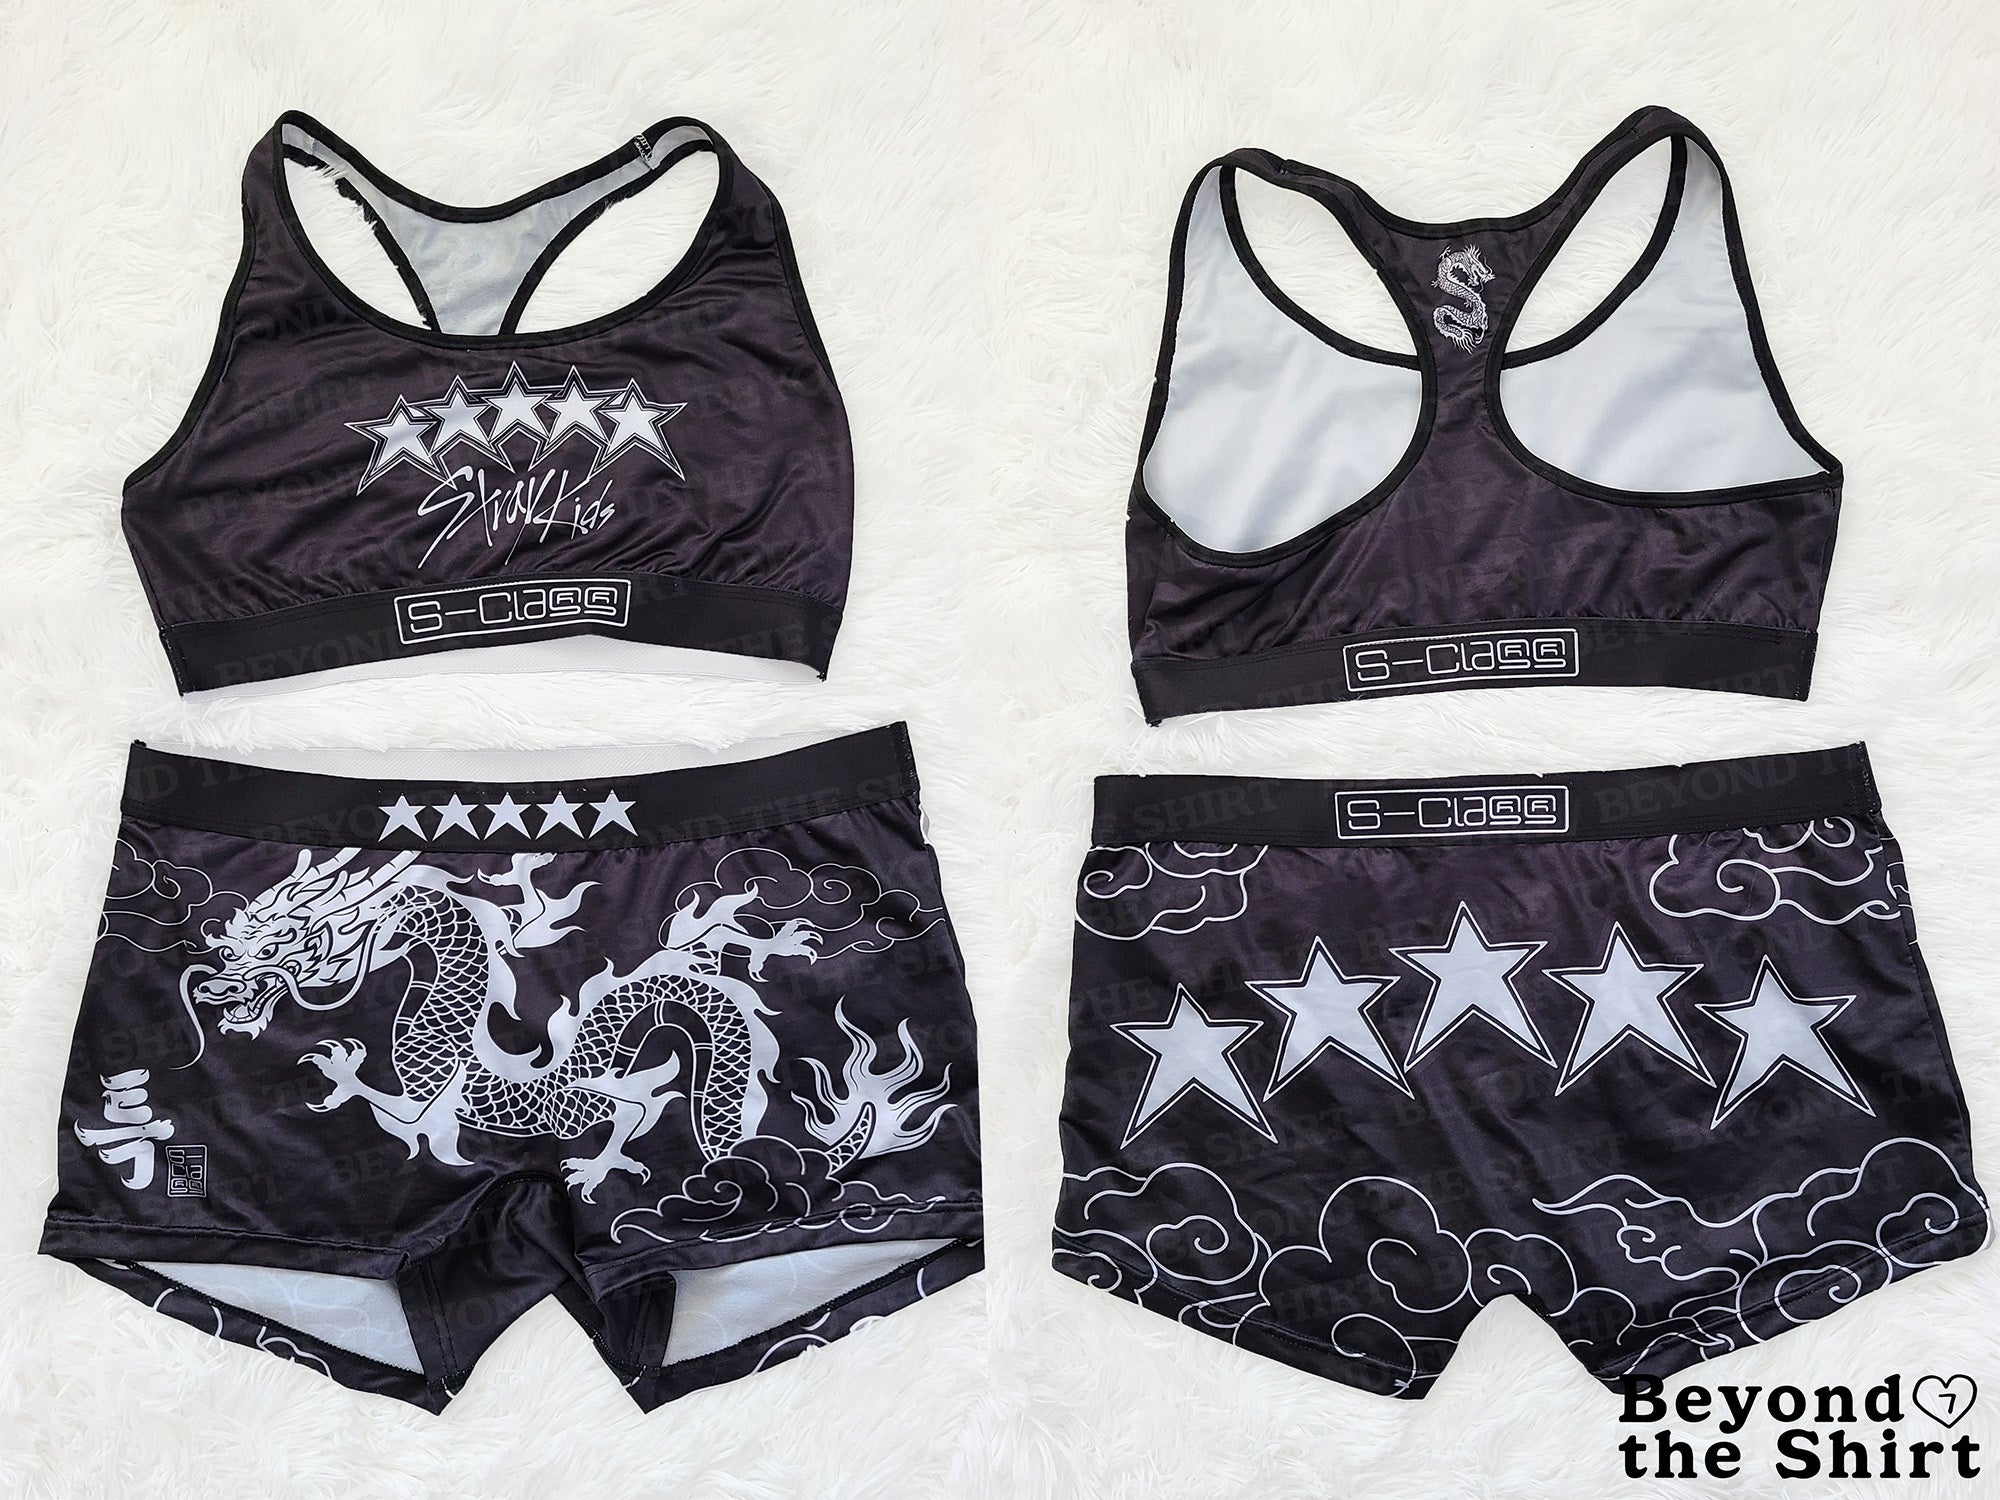 Stray Kids 5-Star Version Underwear Set (read description for details)